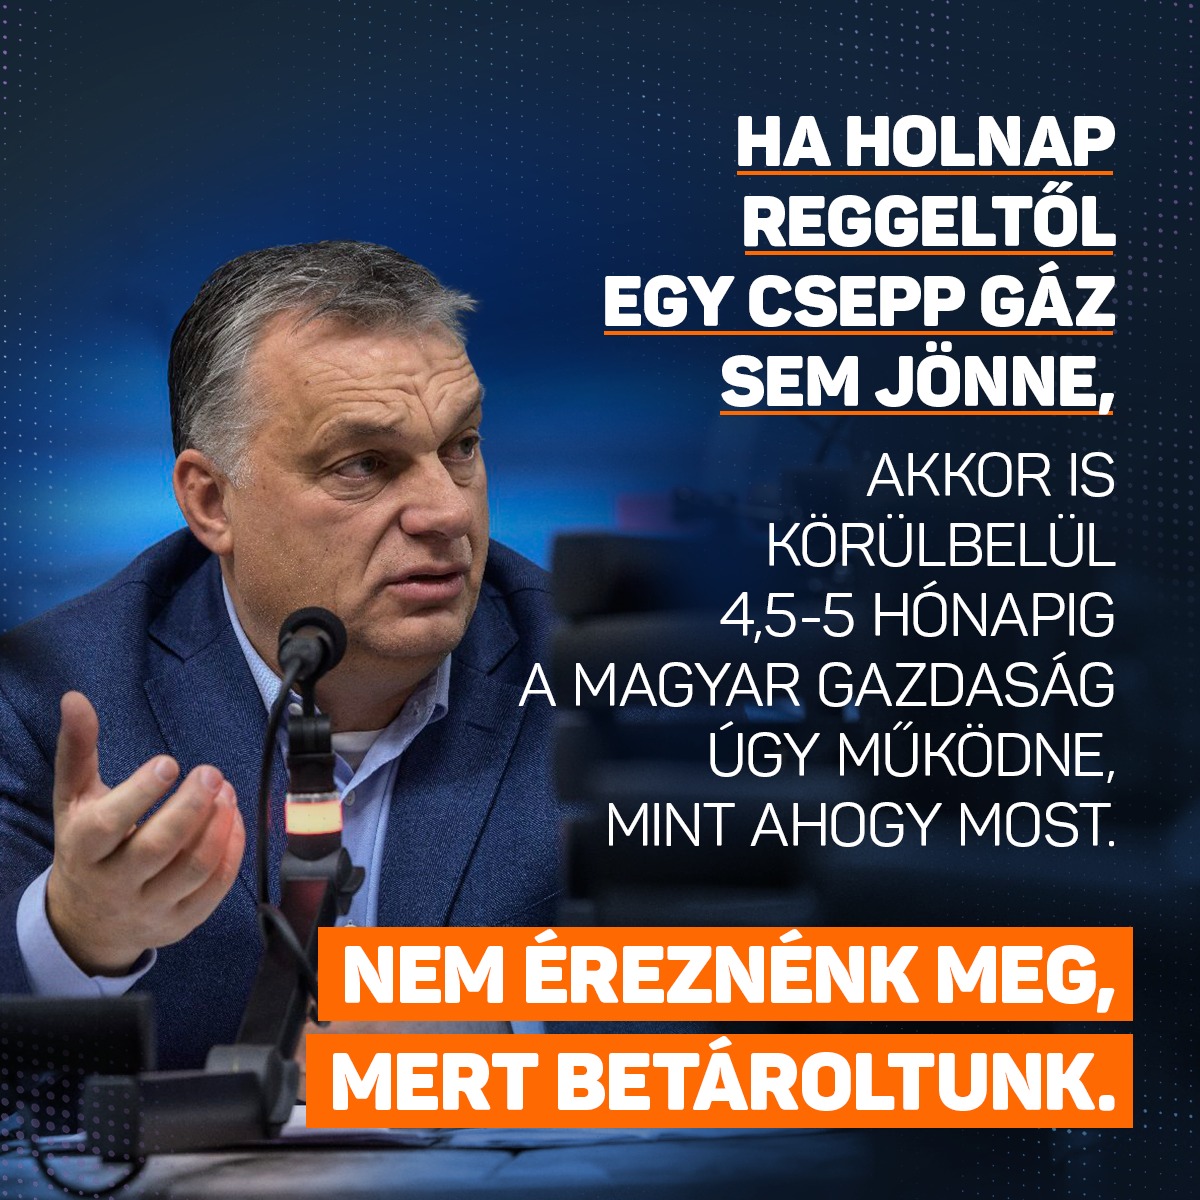 Ma az a helyzet, és ezért lehet mindenki az ellátás felől nyugodt, hogy Magyarország képes arra, hogyha holnap reggeltől egy csepp nem jönne, egy molekula sem jönne a gázvezetékeken, akkor is körülbelül 4,5-5 hónapig a magyar gazdaság úgy működne, mint ahogy most. Nem éreznénk meg, mert betároltunk – mondta Orbán Viktor a Kossuth Rádióban.